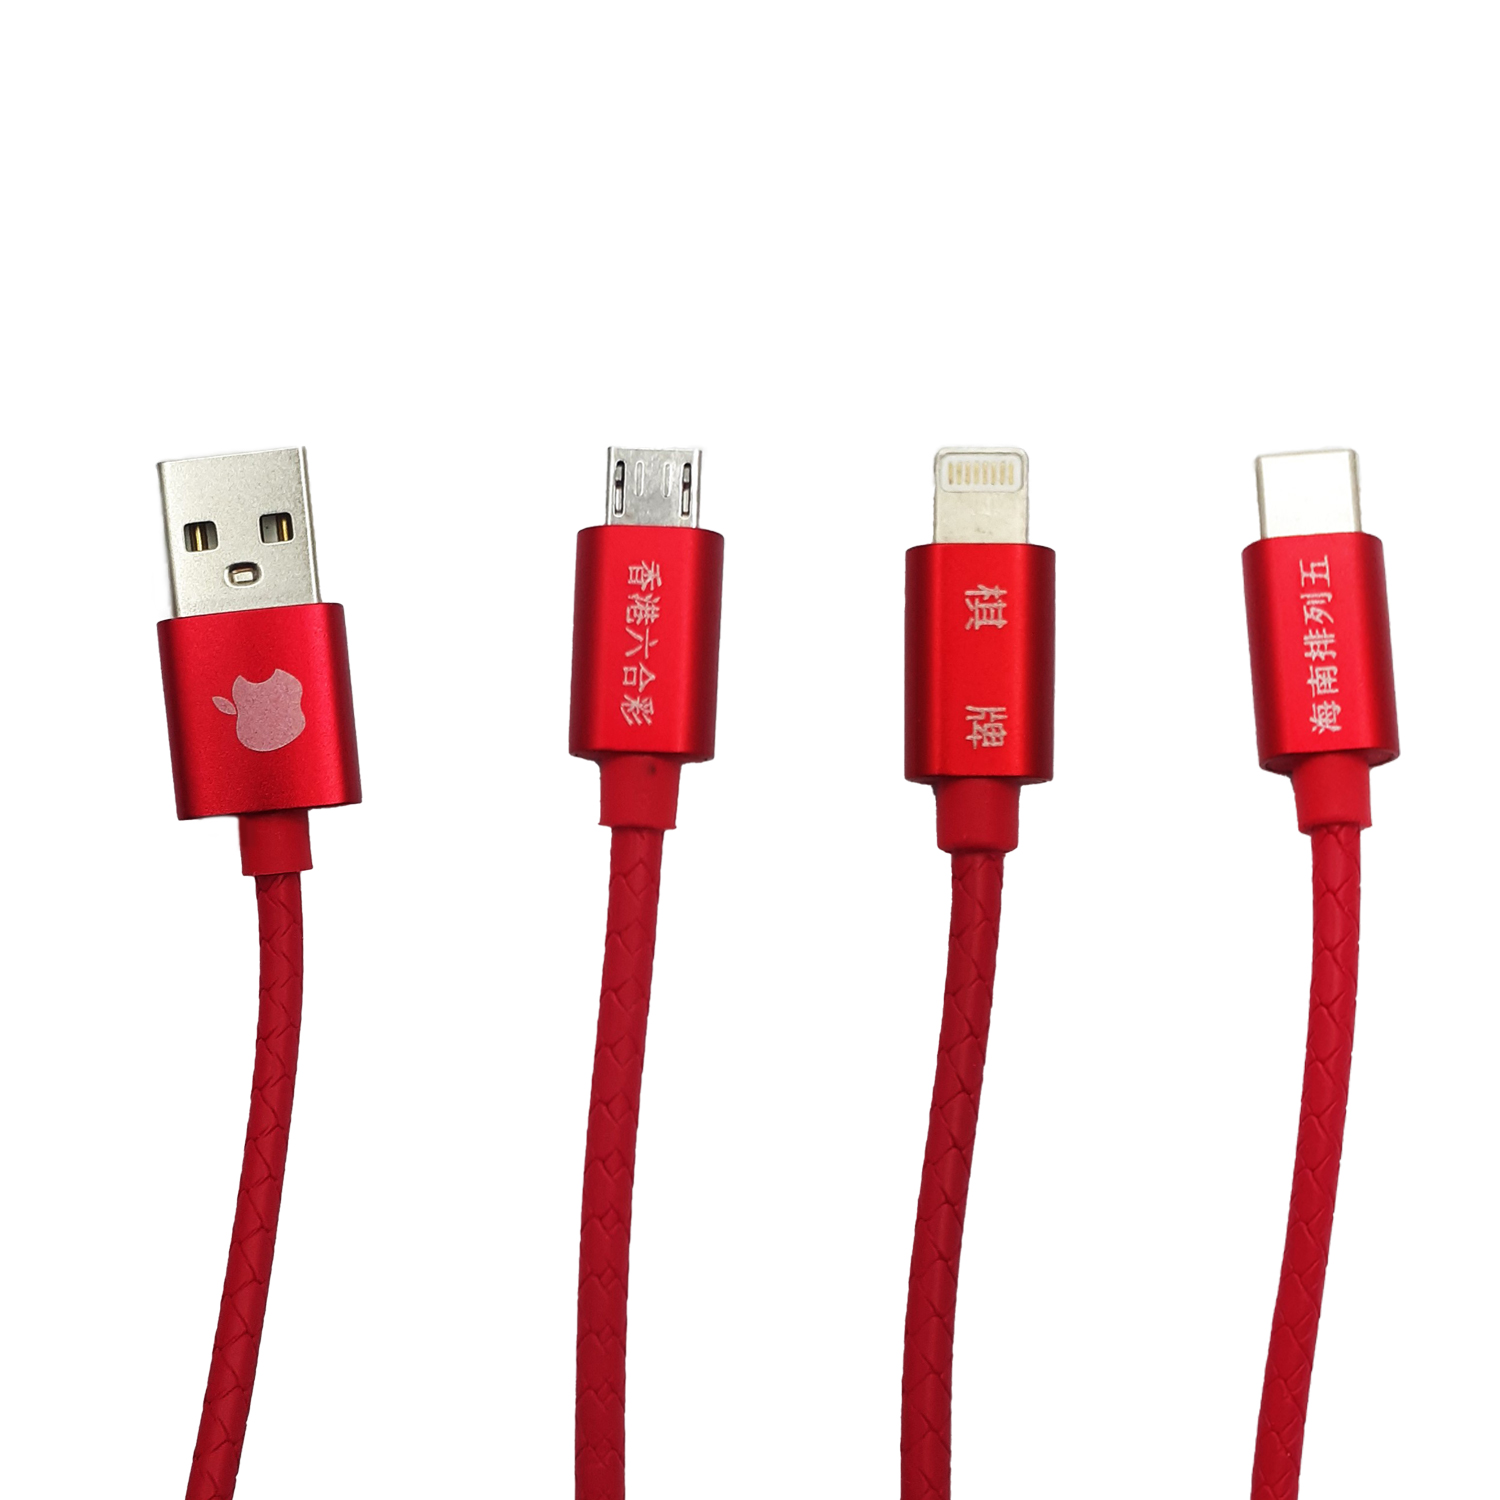 کابل تبدیل USB به لایتنینگ / USB-C / MICROUSB کوییک شارژ مدل QC-3- 1 طول 1 متر